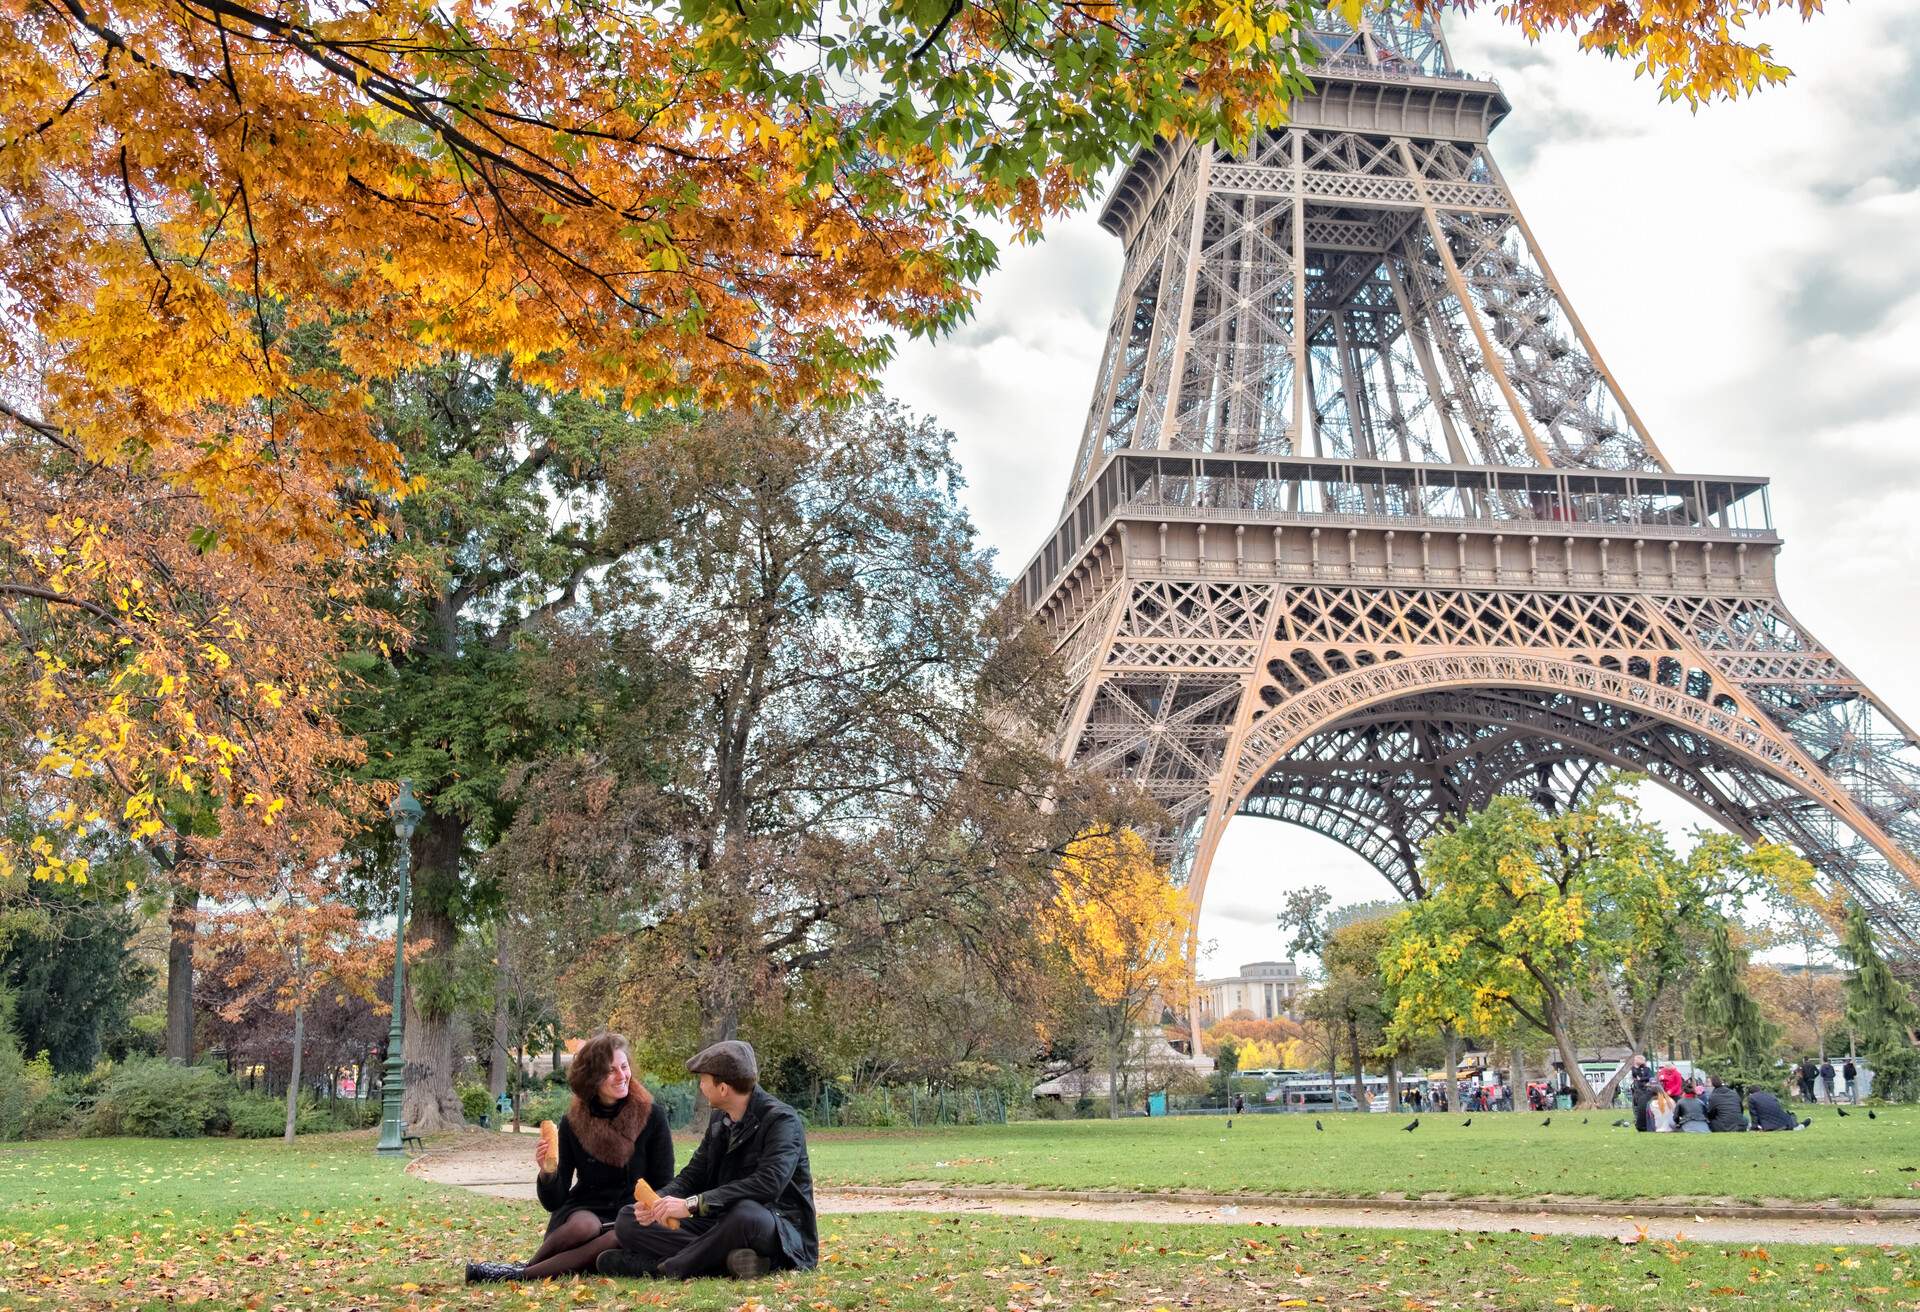 DEST_FRANCE_PARIS_EIFFEL-TOWER_THEME_PEOPLE_COUPLE_ON_A_PICNIC_GettyImages-624722950